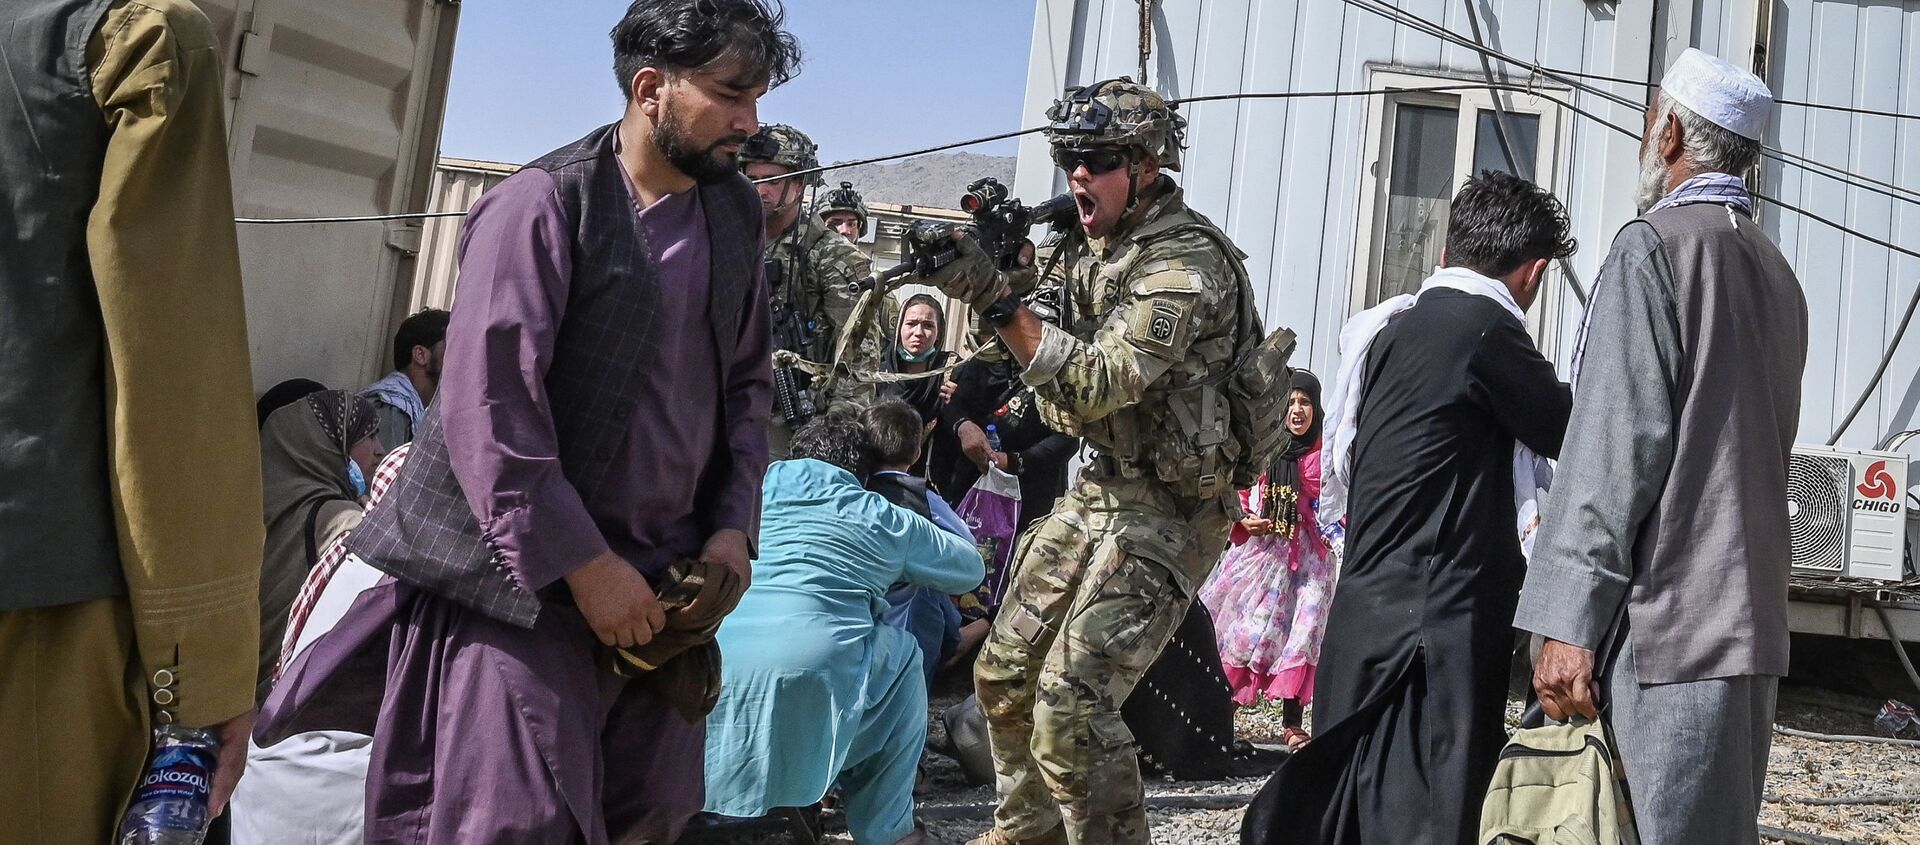 Американский солдат целится на афганцев в аэропорту Кабула  - Sputnik Южная Осетия, 1920, 04.09.2021